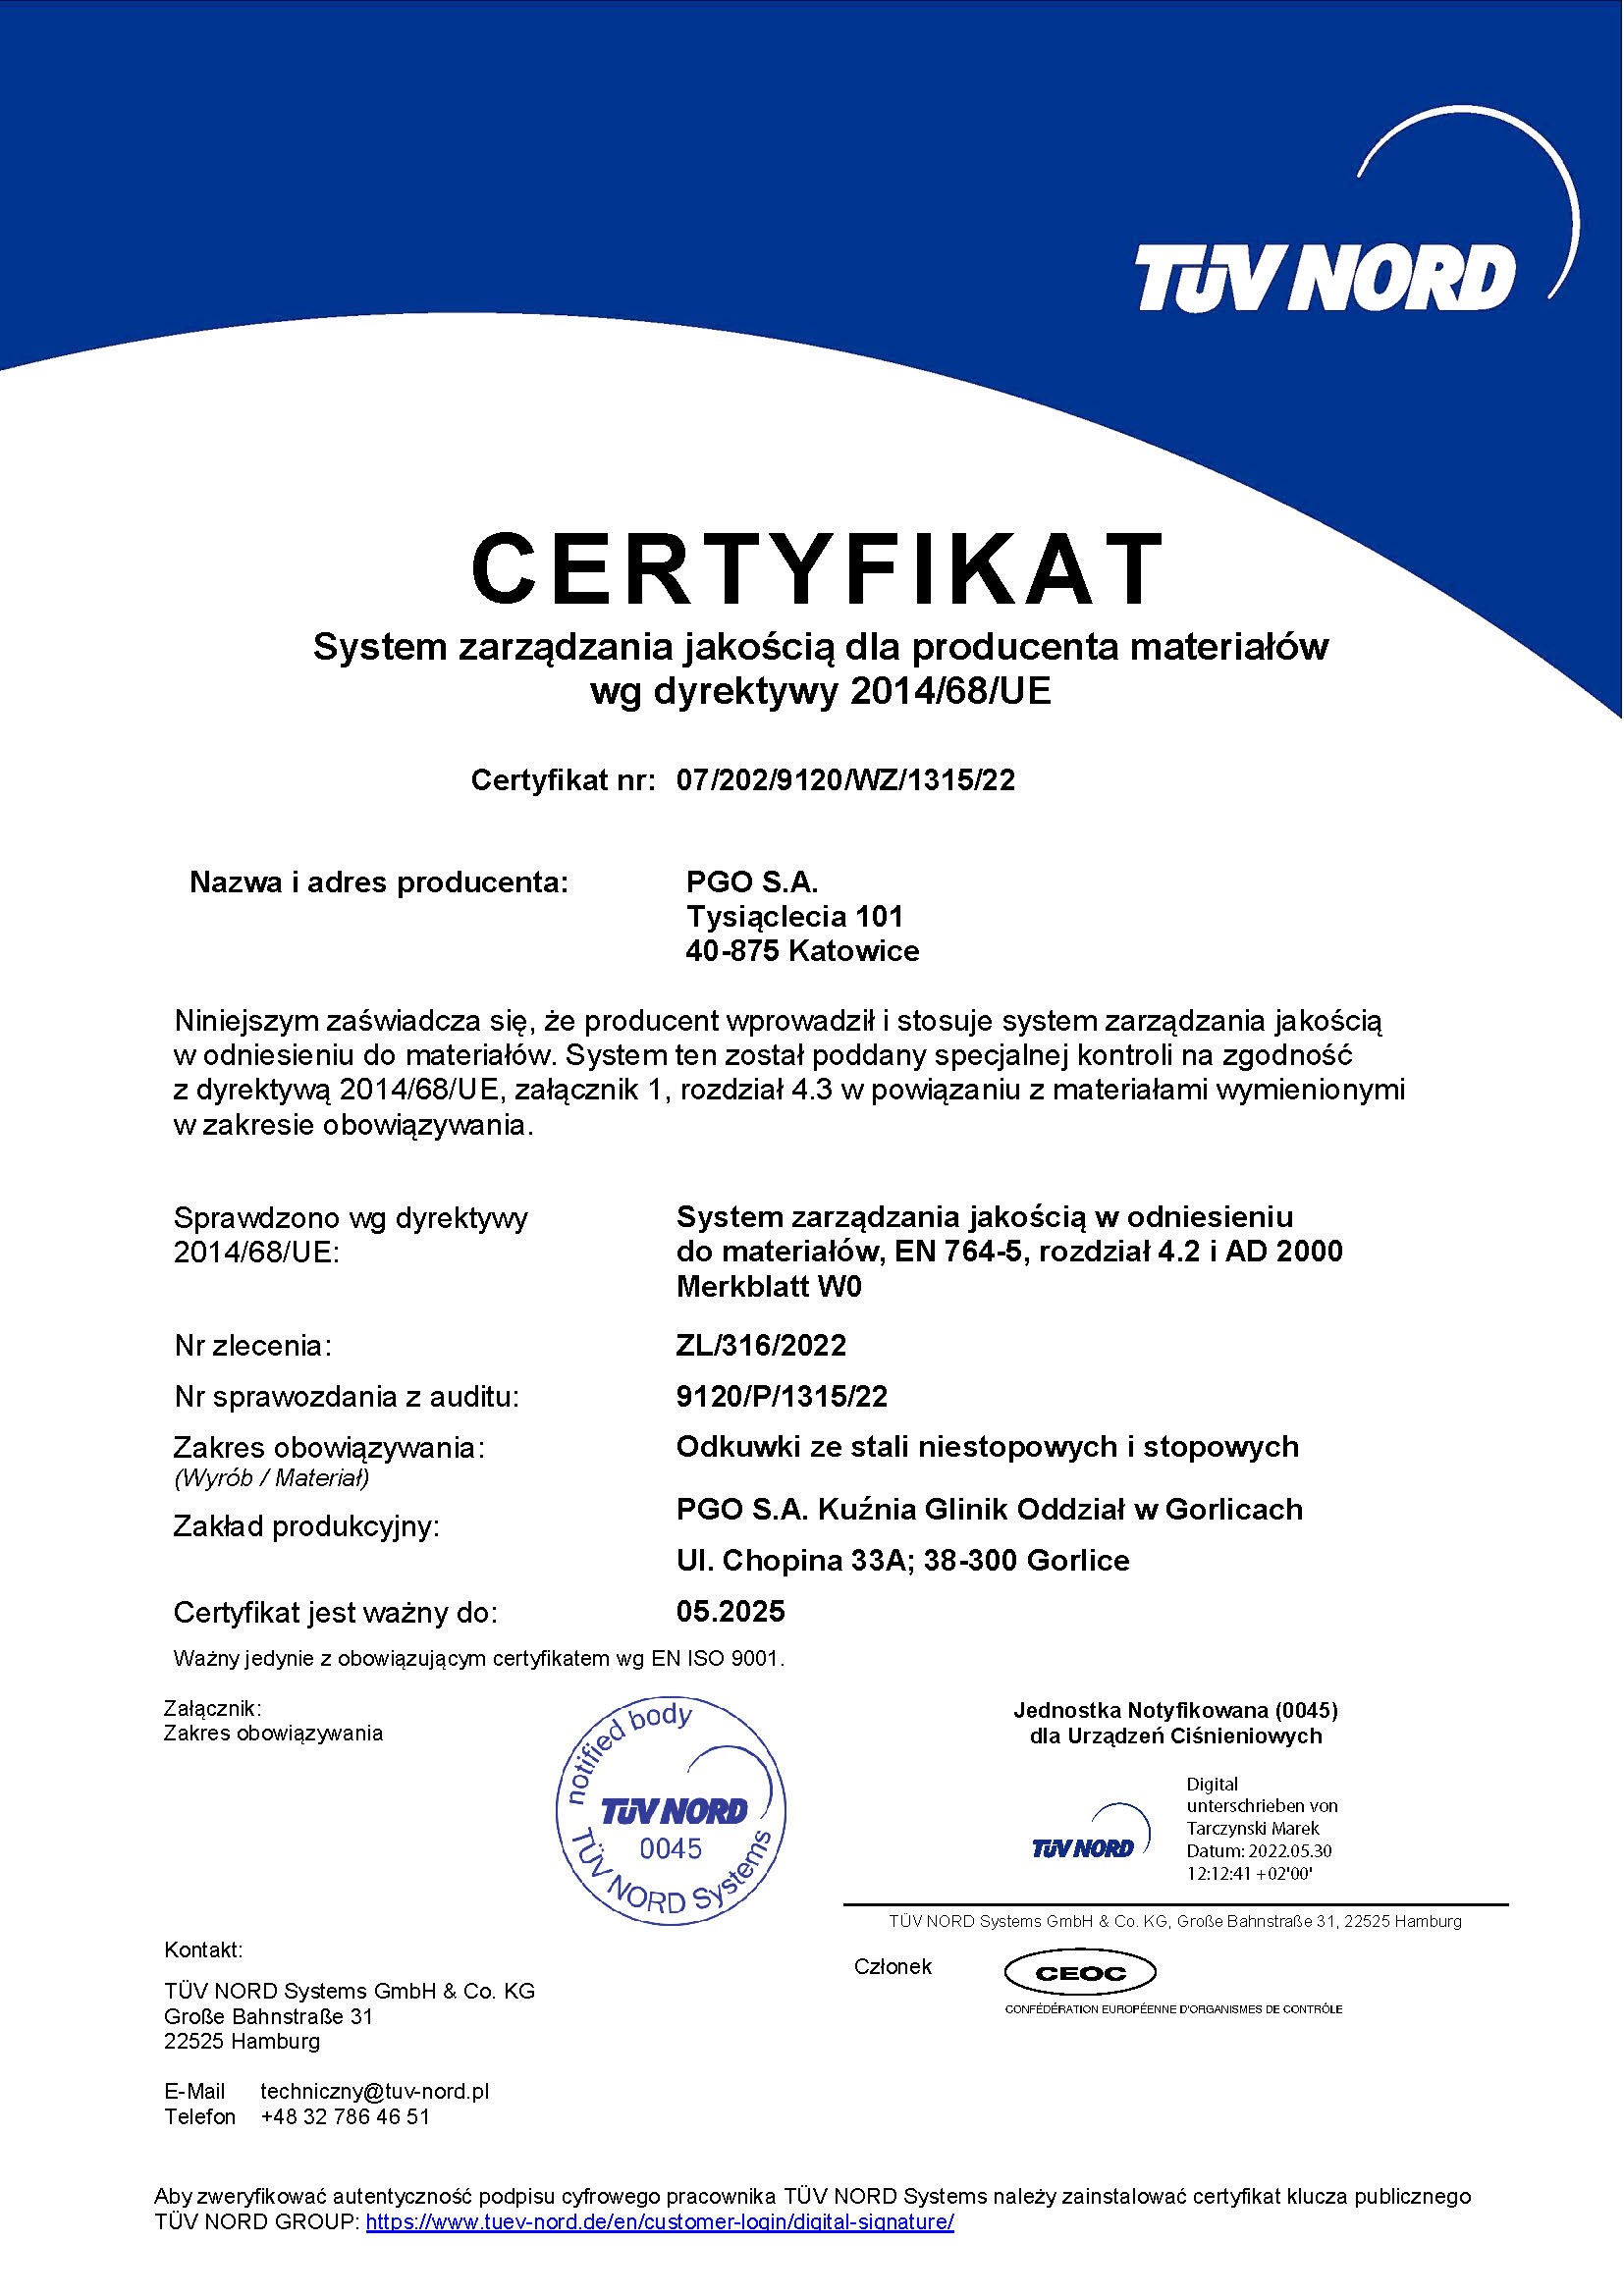 Certyfikat - System zarządzania jakości dla producenta materiałów wg dyrektywy 2014/68/UE